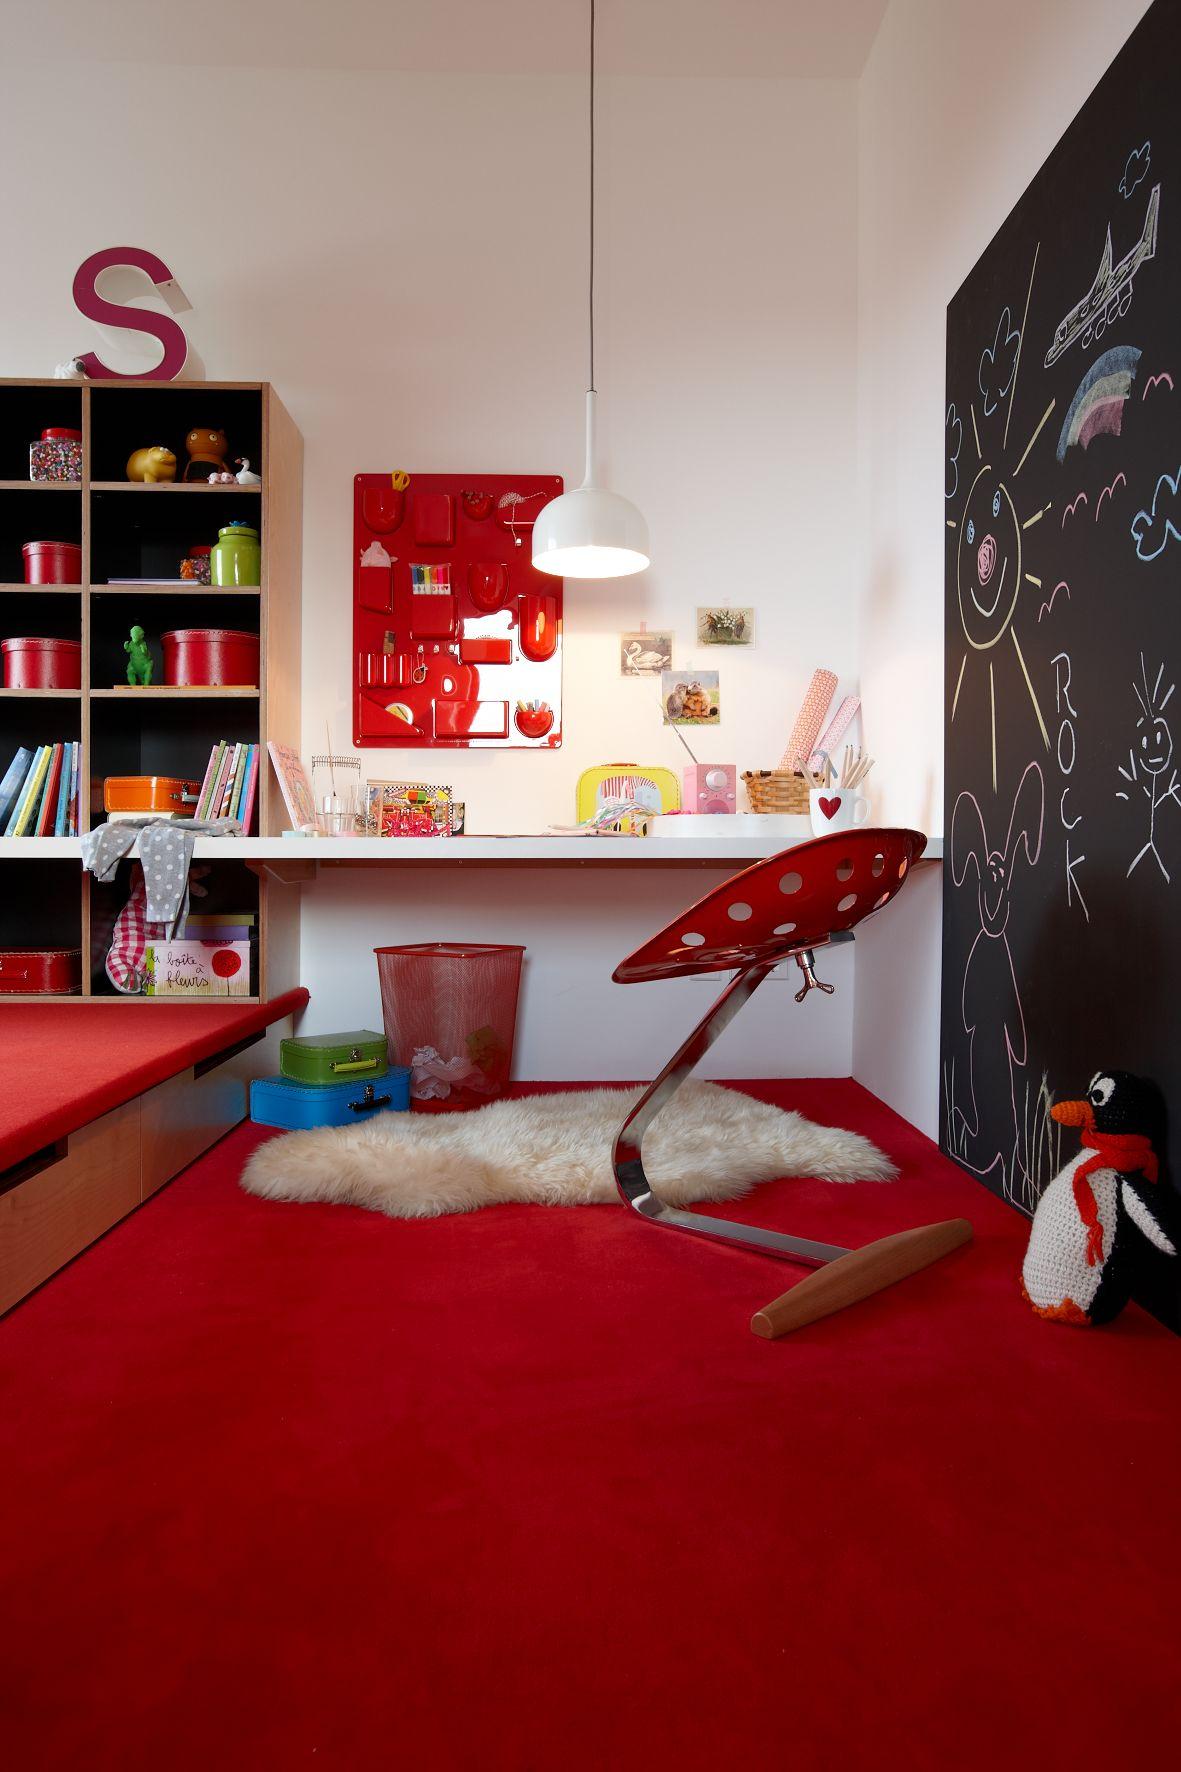 Kinderzimmer mit Podest und Schreibplatz #regal #teppichboden #podest ©Heiner Orth